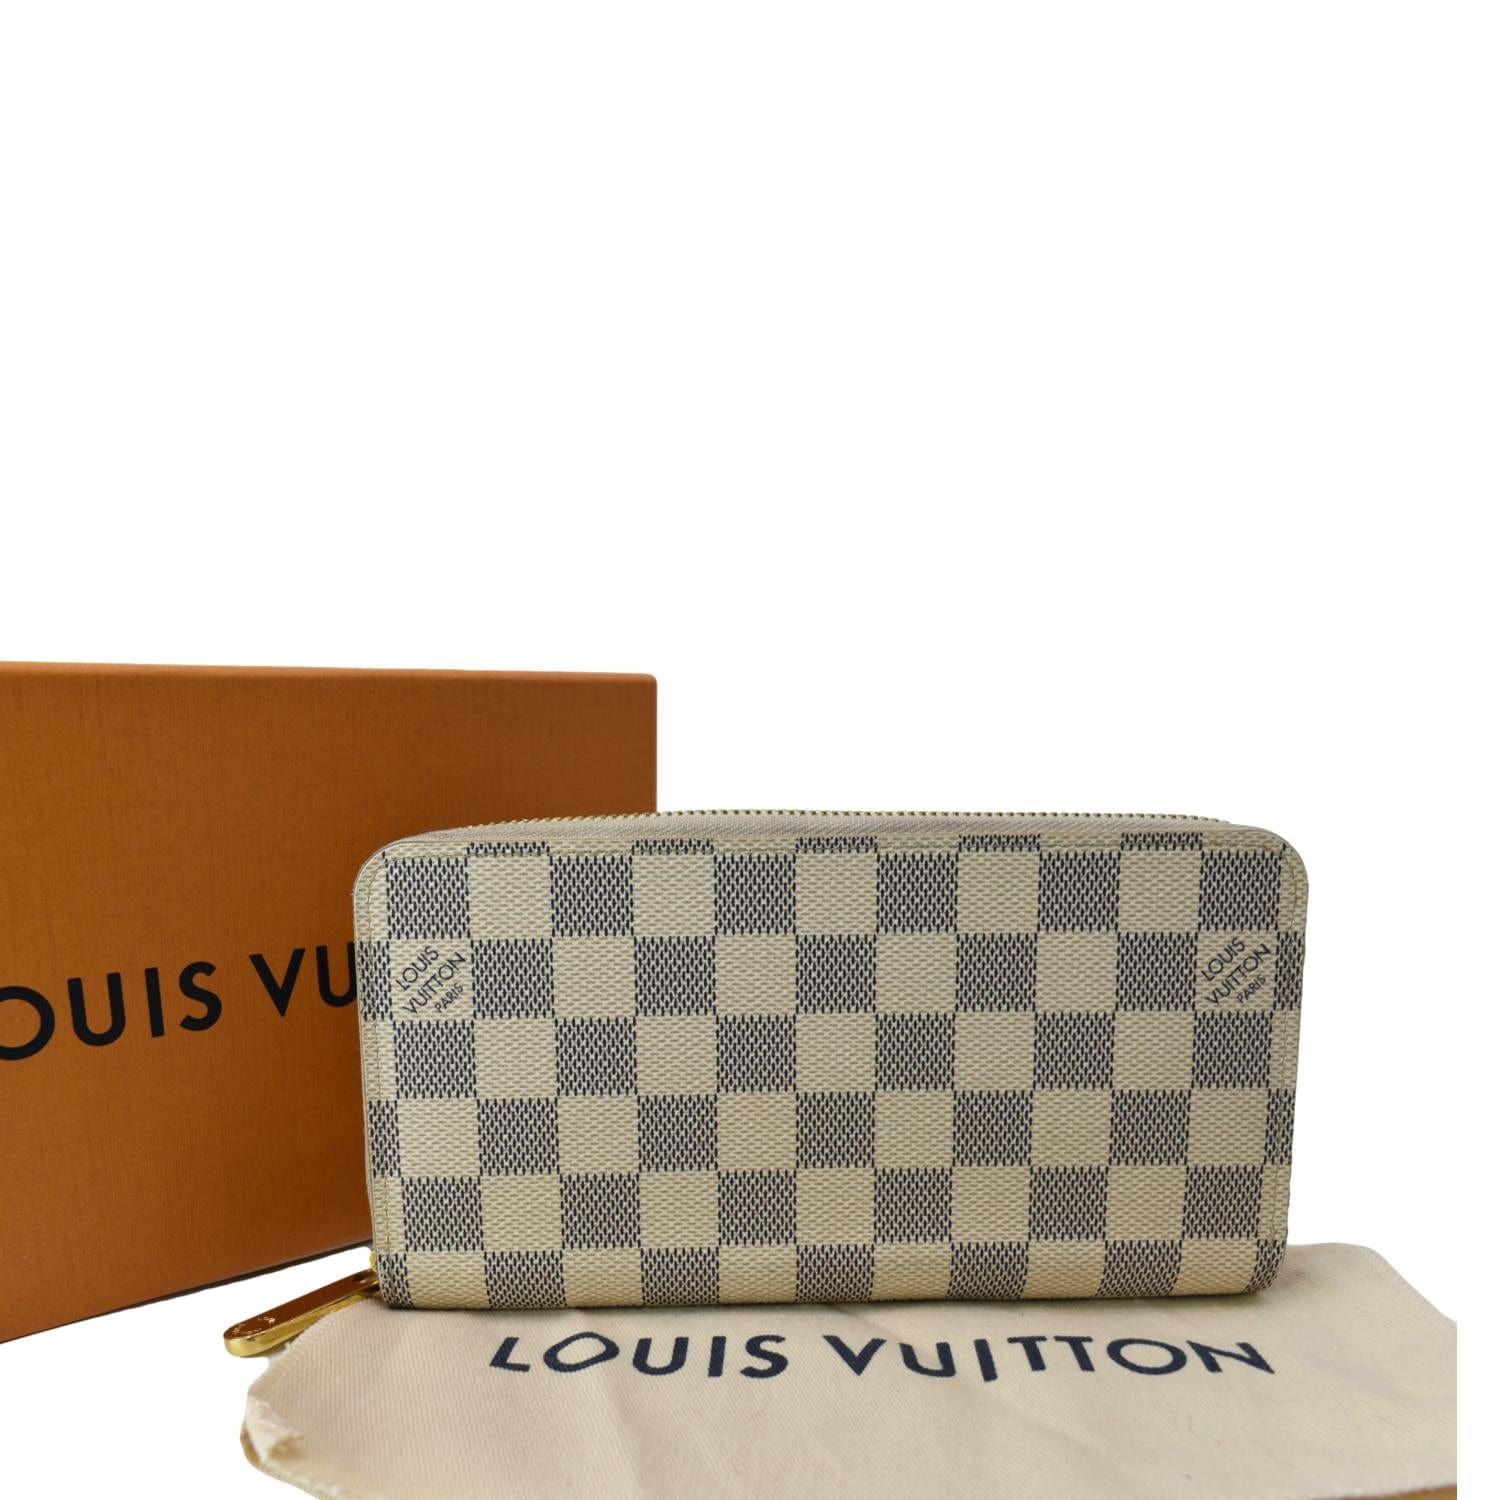 Louis Vuitton Damier Azur Multiple Wallet 1214lv31 For Sale at